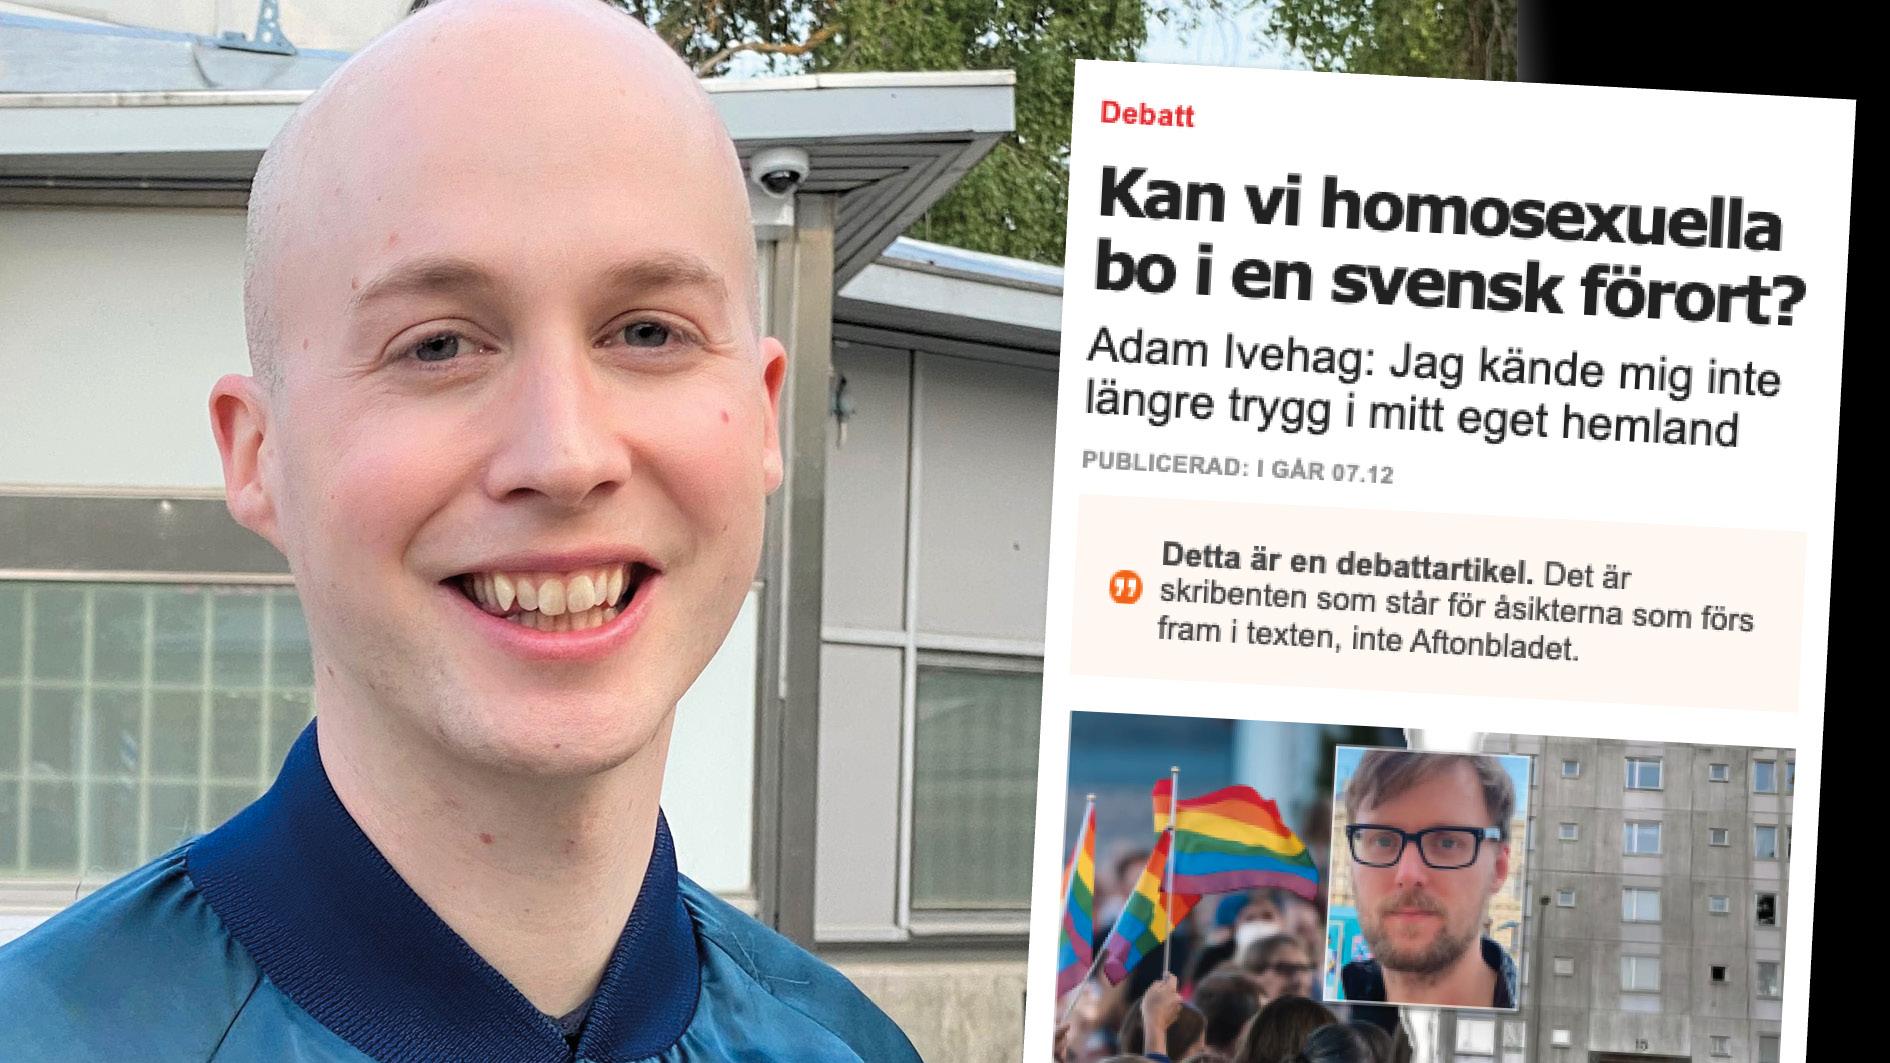 Låt oss enas om en kompromisslös kamp mot homofobin i hela Sverige, i alla förorter och bruksorter. Oavsett om det är Jimmie Åkesson som kallar Pride-paraden för pervers eller om det är Nyans som vill tillåta hatpropaganda och sprida konservativ dynga. Replik från Jesper Lindholm.